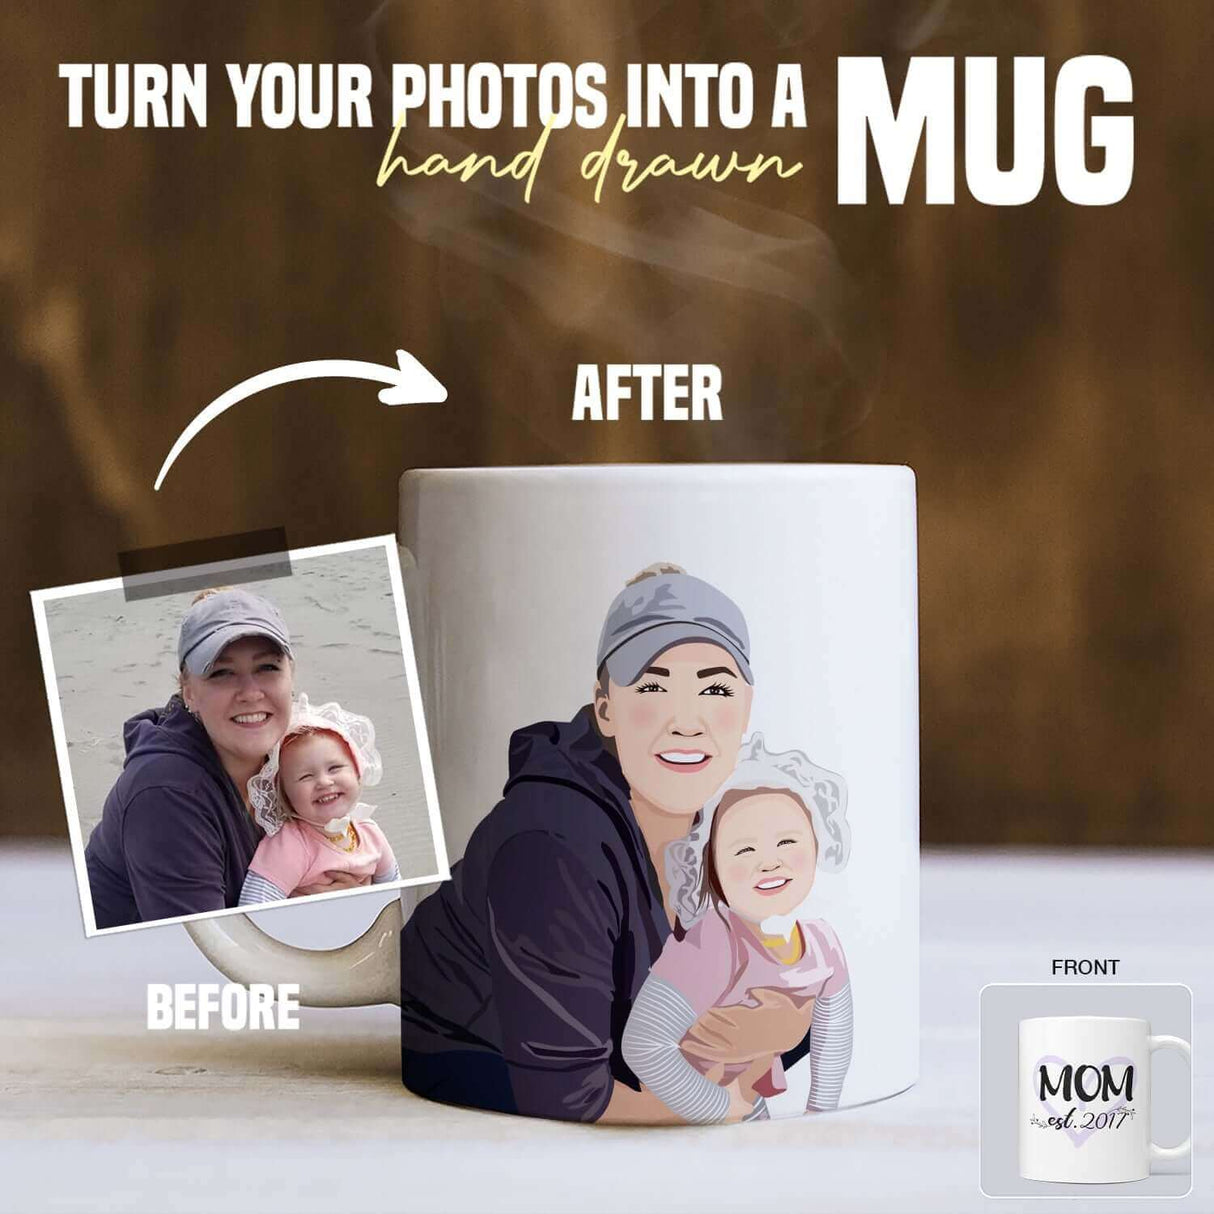 Personalized Mom & Year Photo Mug